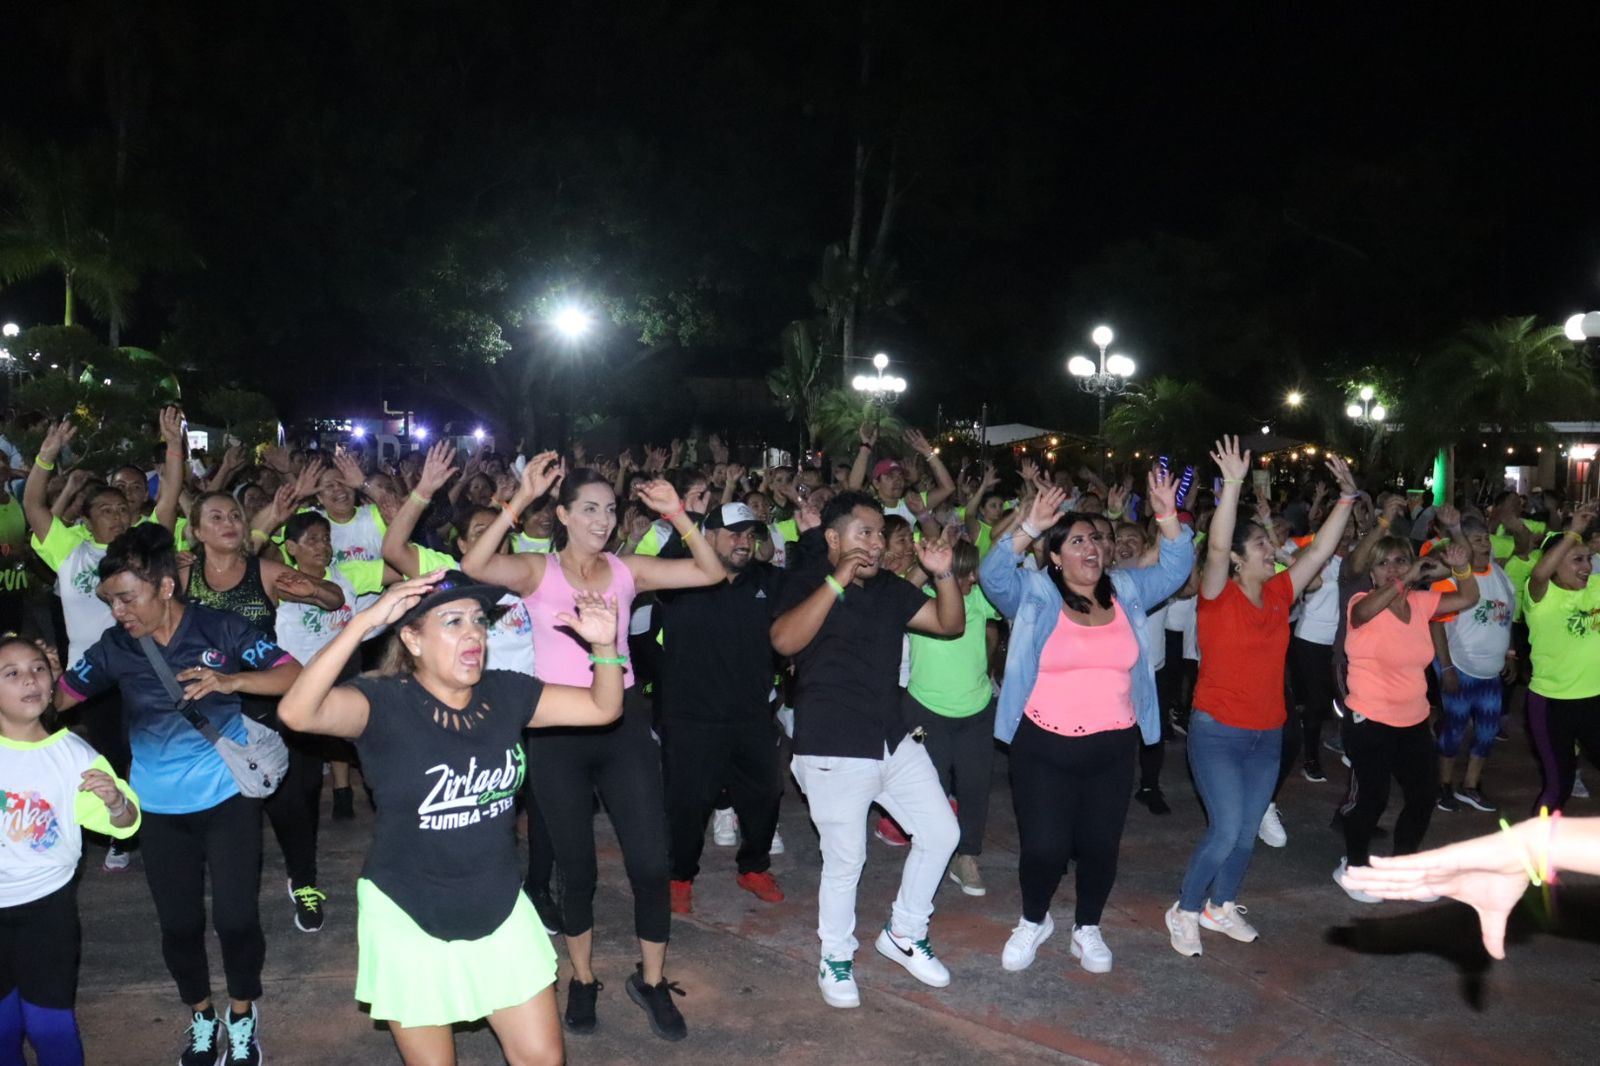 Hace vibrar Zumba Glow explanada del Parque Lázaro Cárdenas